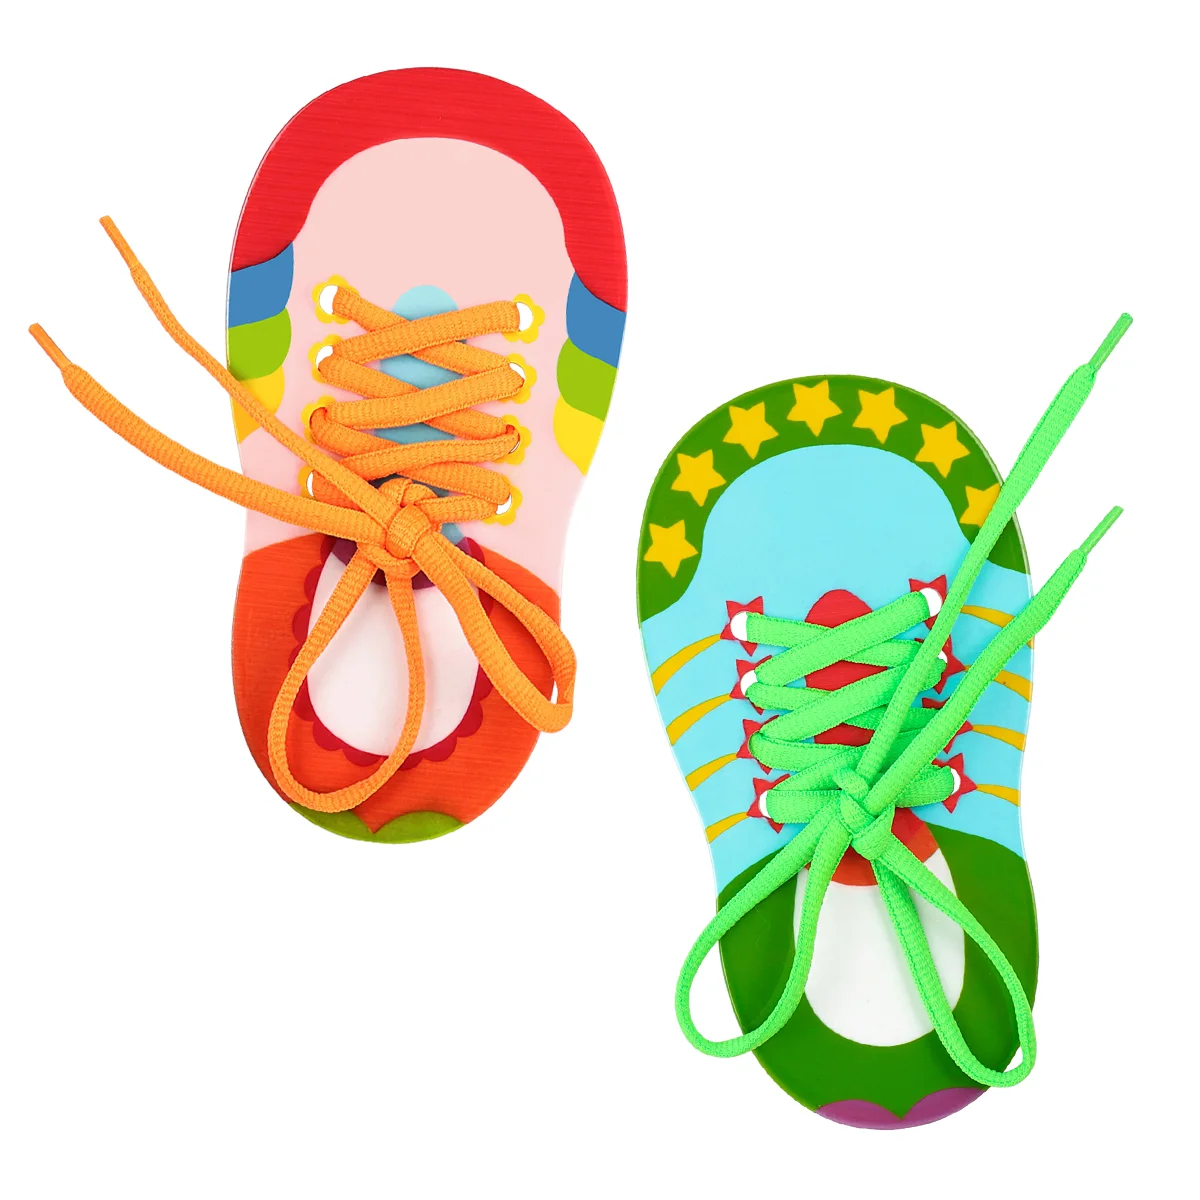 

Шнурки для обуви детские с резьбой, детские шнурки, обувные игрушки для обучения кроссовкам, обувные шнурки, 2 шт.